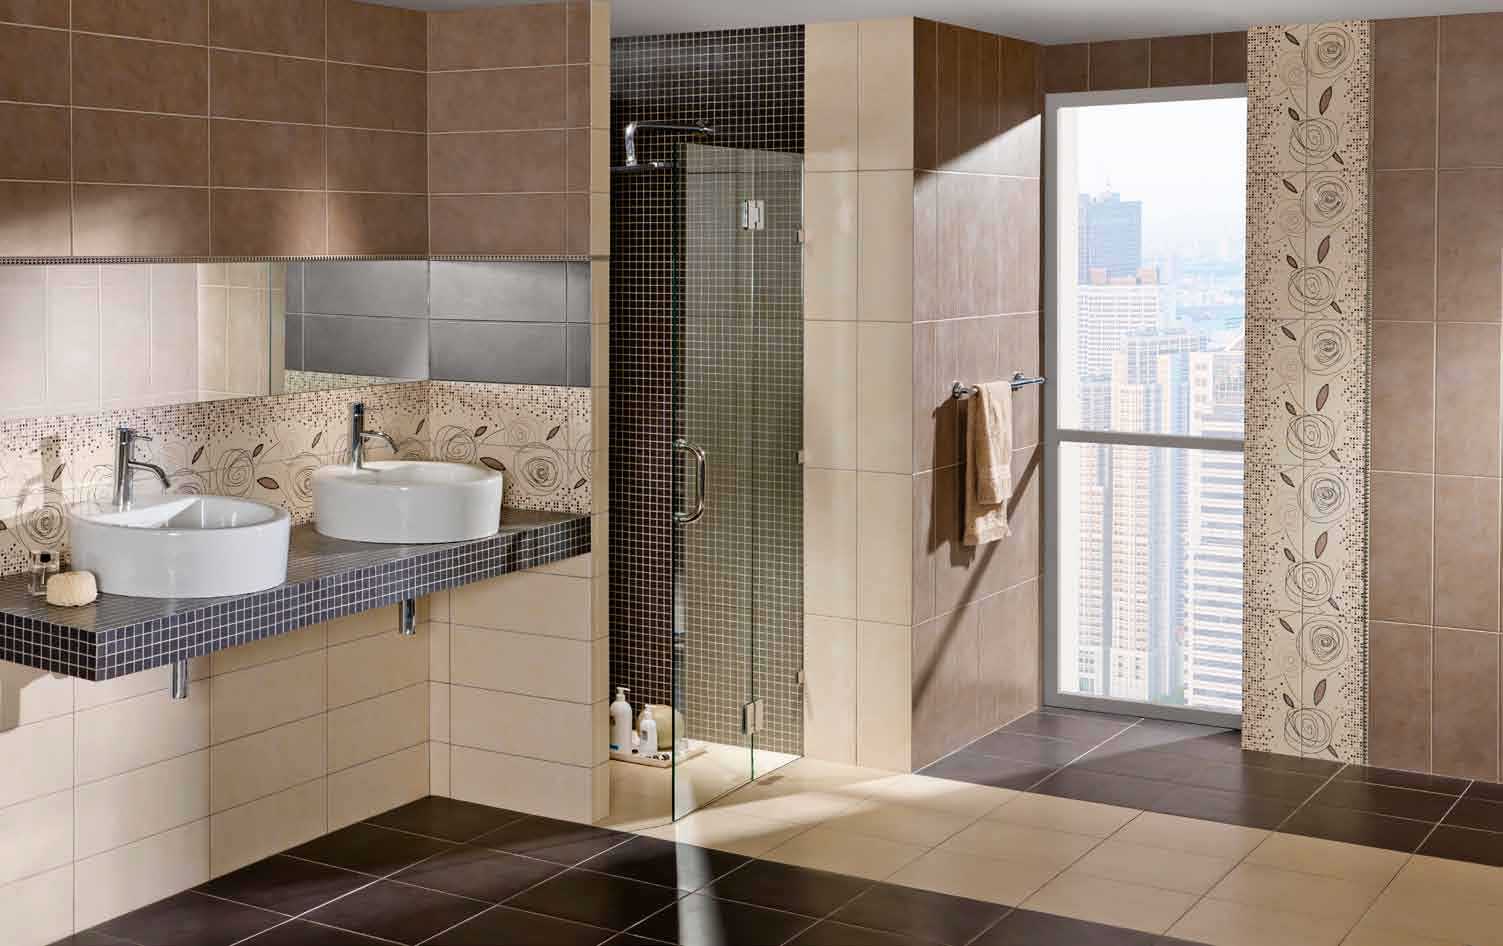 Размеры плитки для ванной на стену: стандартные размеры и наиболее практичная толщина для облицовки ванной, регламентируется ли размер, как выбрать наиболее удобный вариант